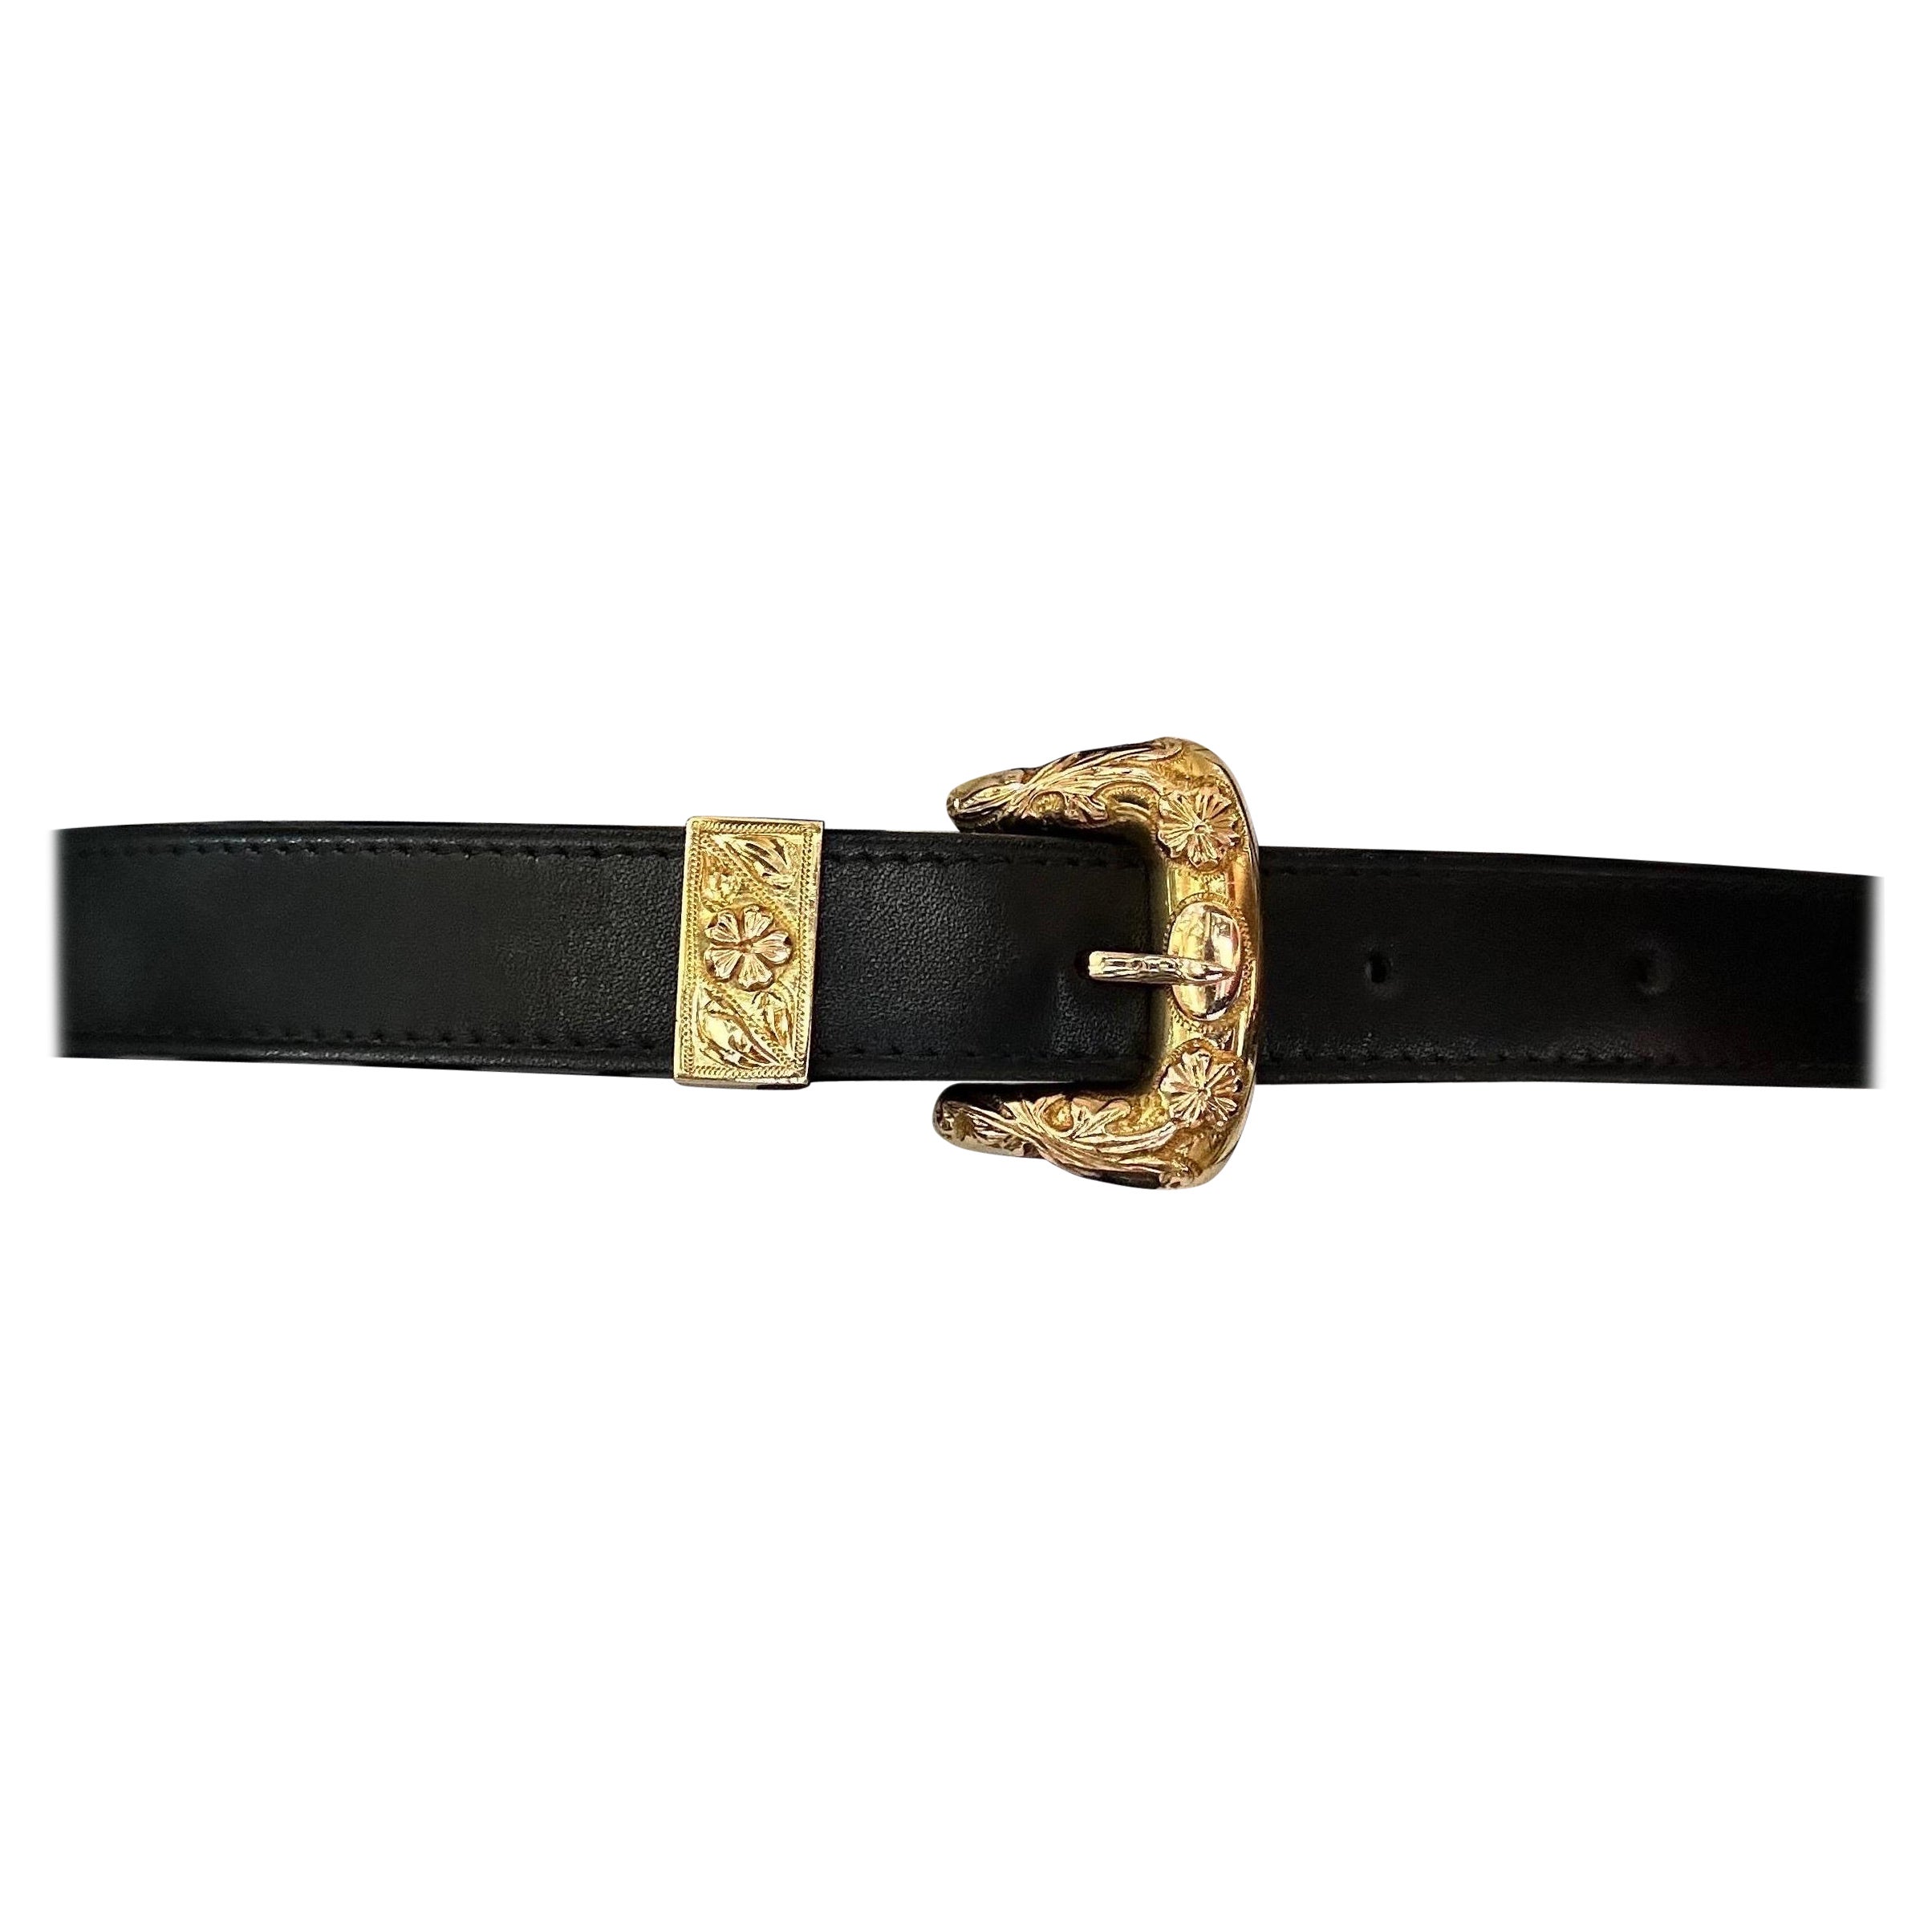 French Belt 18 Carat Gold Belt Buckle For Sale